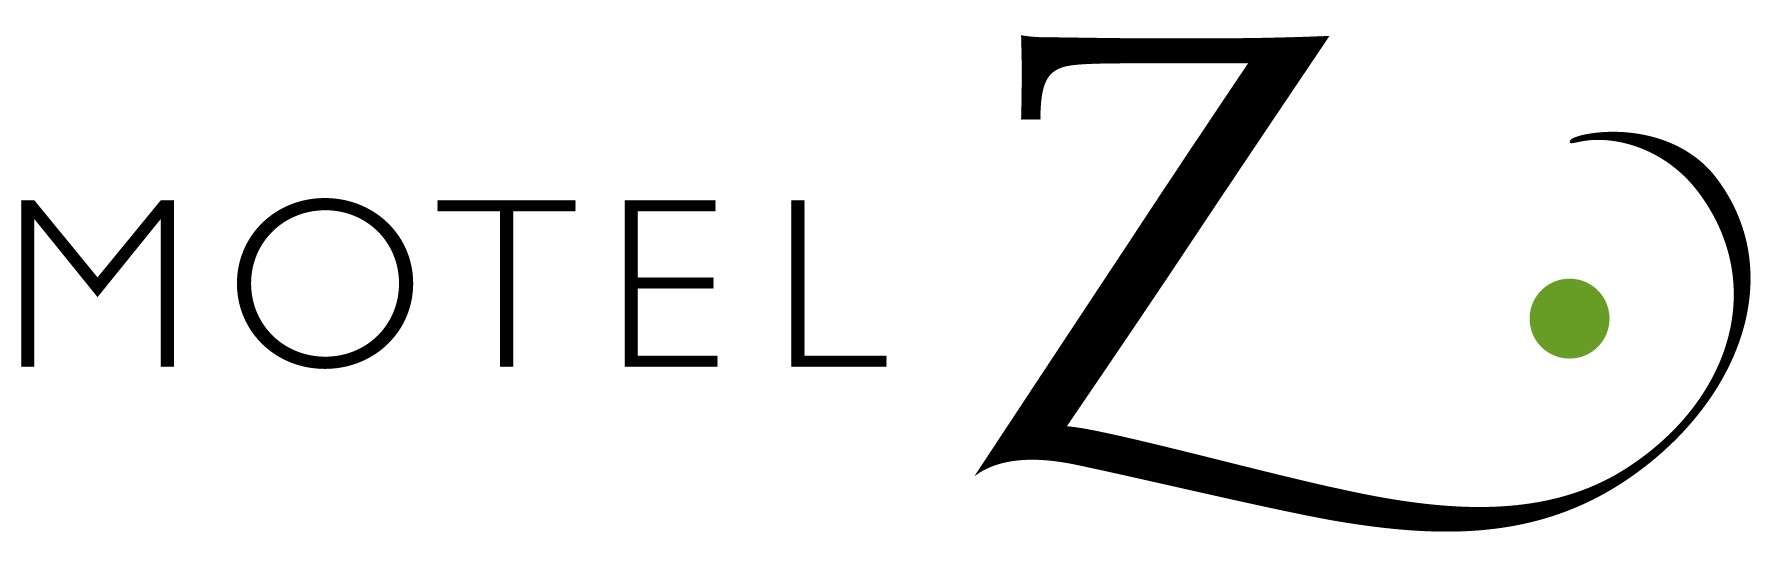 Motel Z